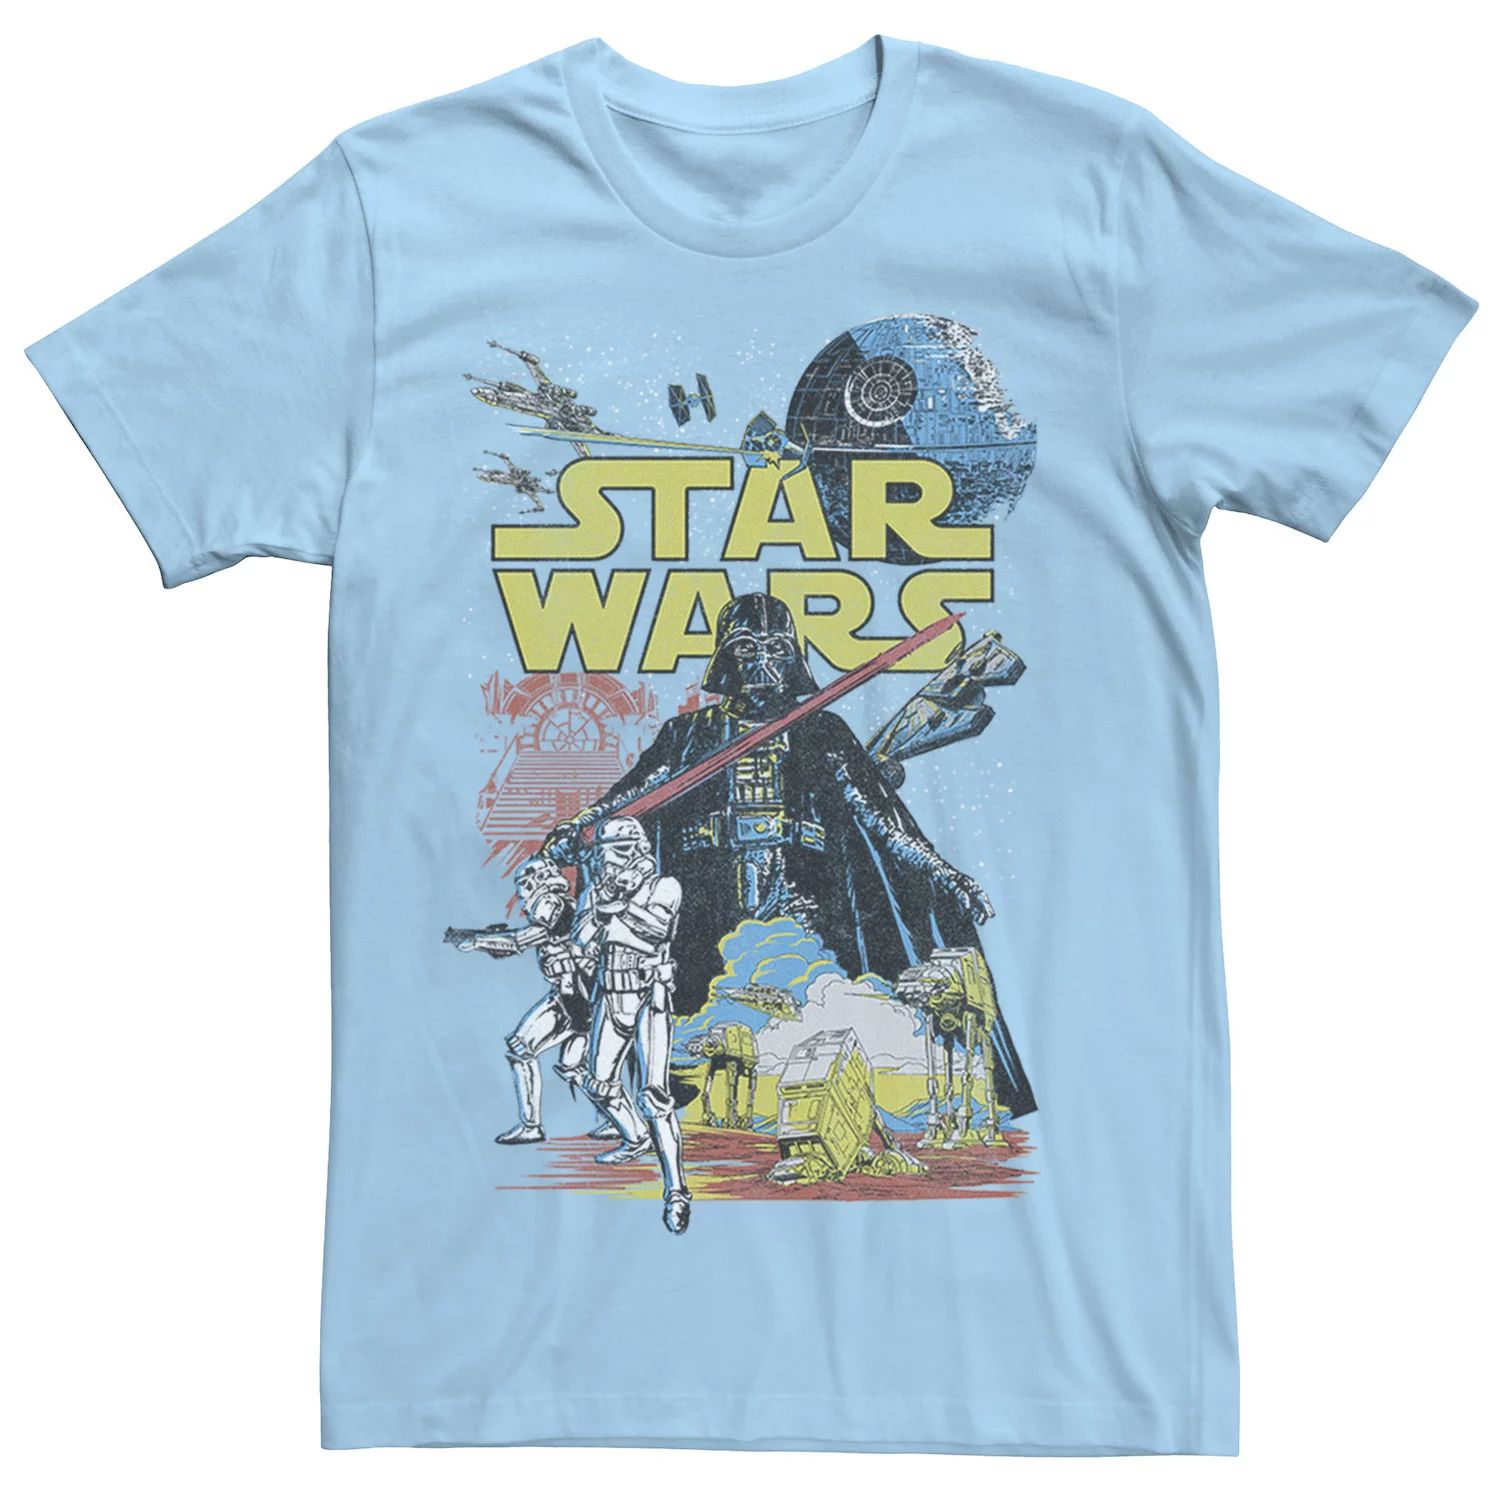 Мужская классическая футболка с графическим плакатом Rebel Star Wars, светло-синий мужская классическая футболка с графическим плакатом rebel star wars светло синий